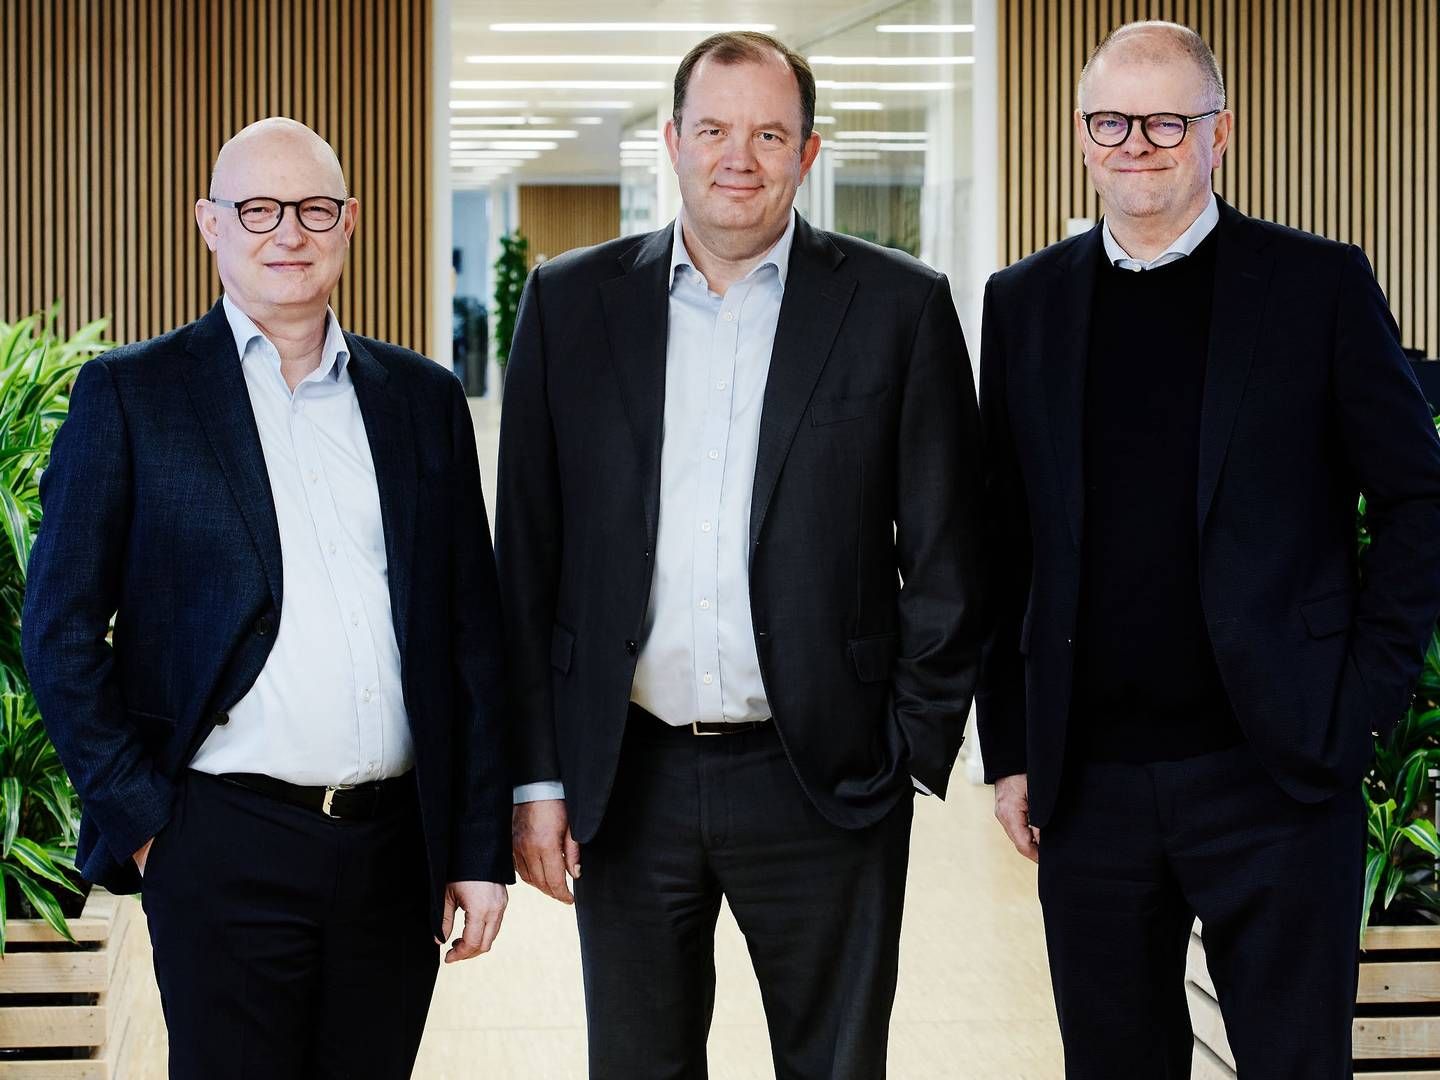 Fra venstre ses Anders Skipper, økonomidirektør, Jens Holger Nielsen, koncerndirektør og Peder Winther, direktør for skibsforsyning i Wrist.